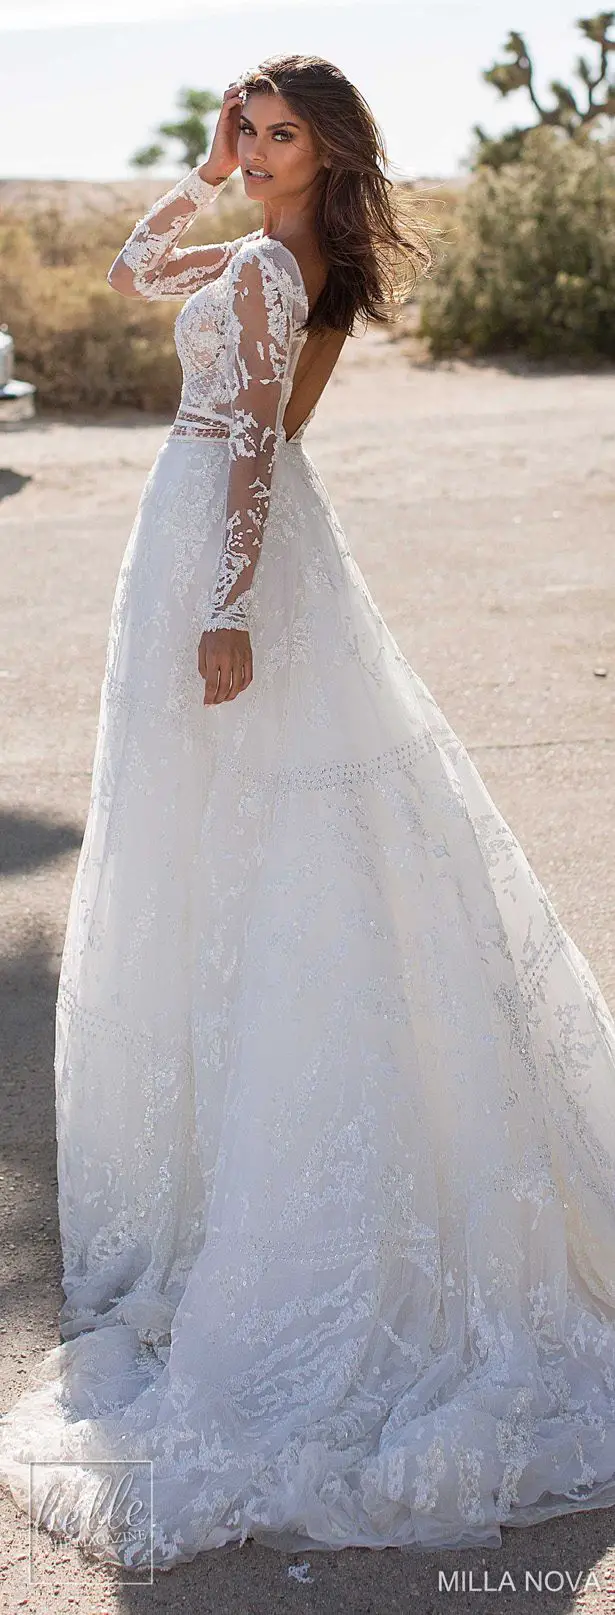 Milla Nova Wedding Dresses 2019 - California Dream Collection - Rebecca 107